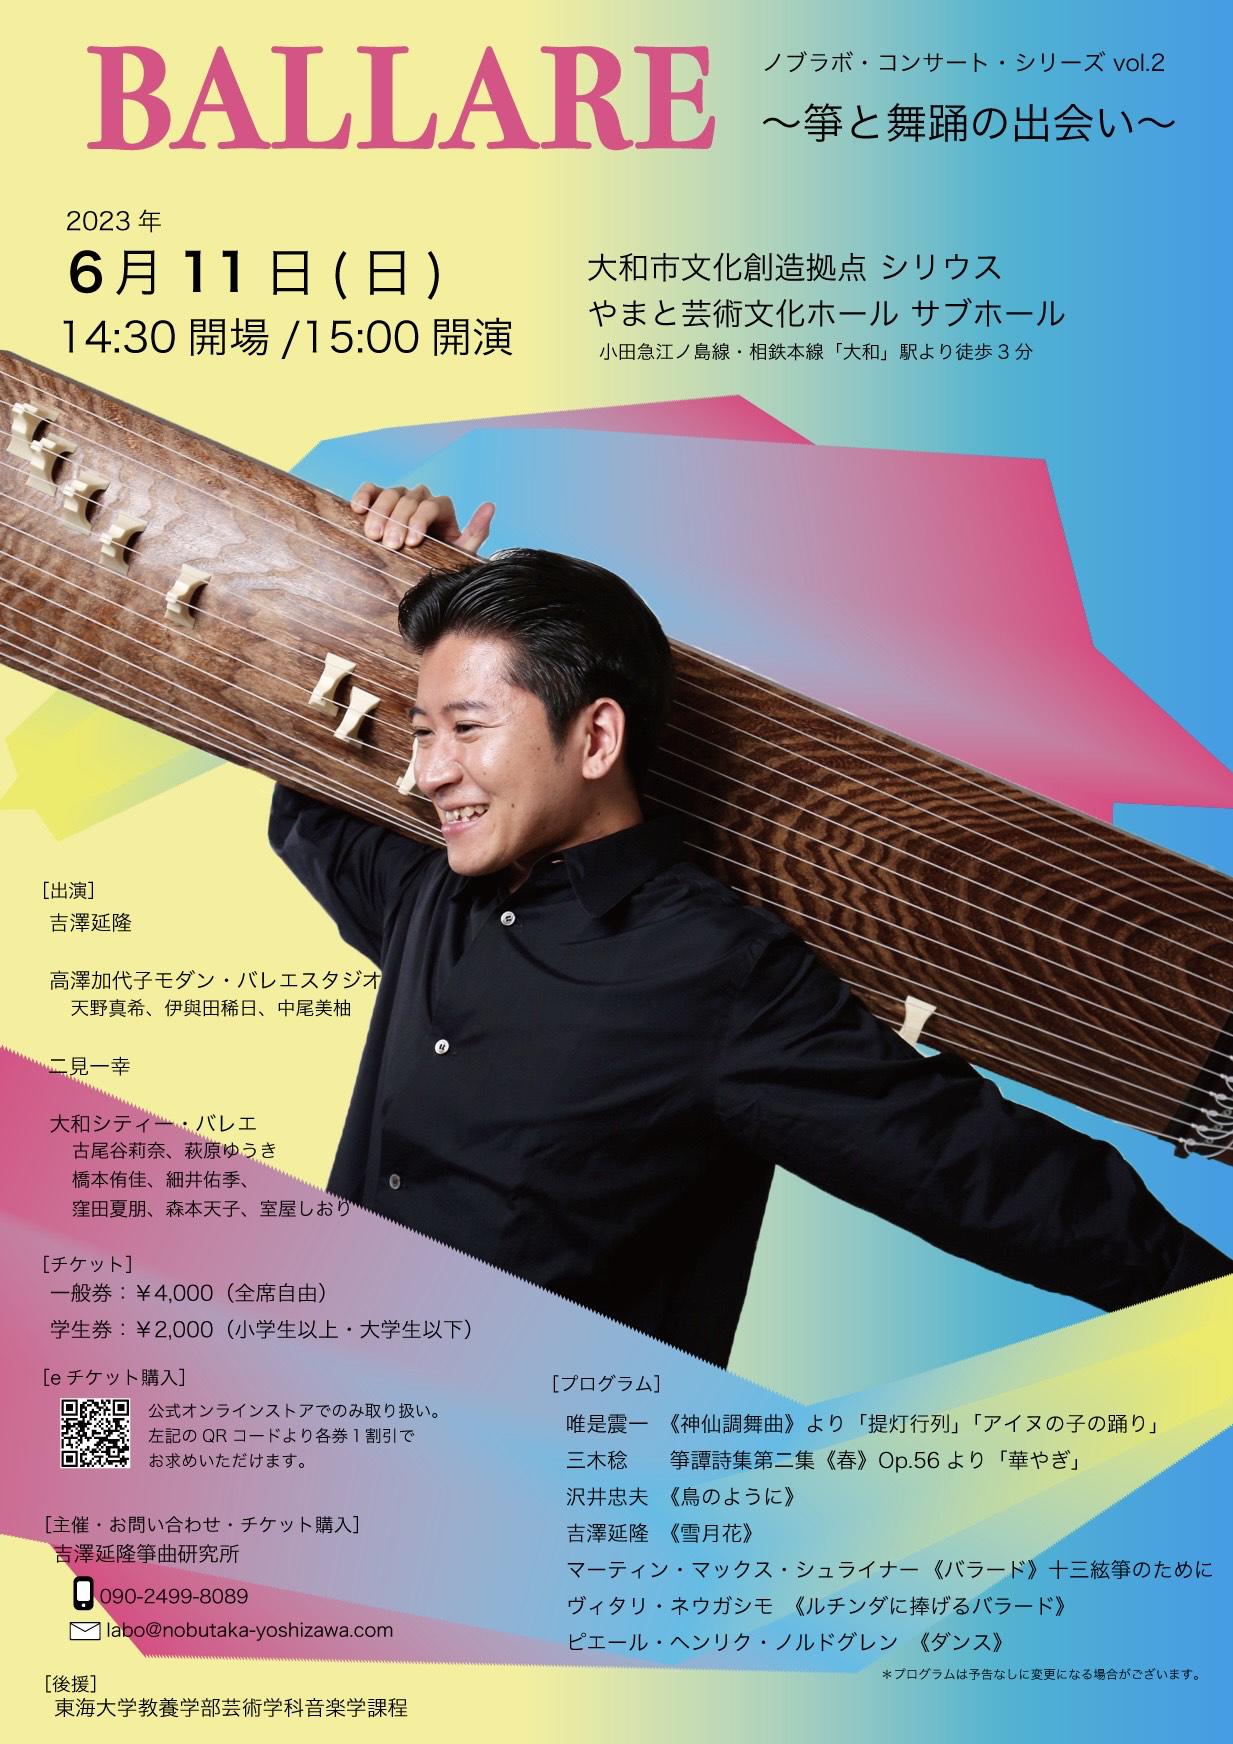 ノブラボ・コンサート・シリーズ vol.2『BALLARE 〜箏と舞踊の出会い〜』